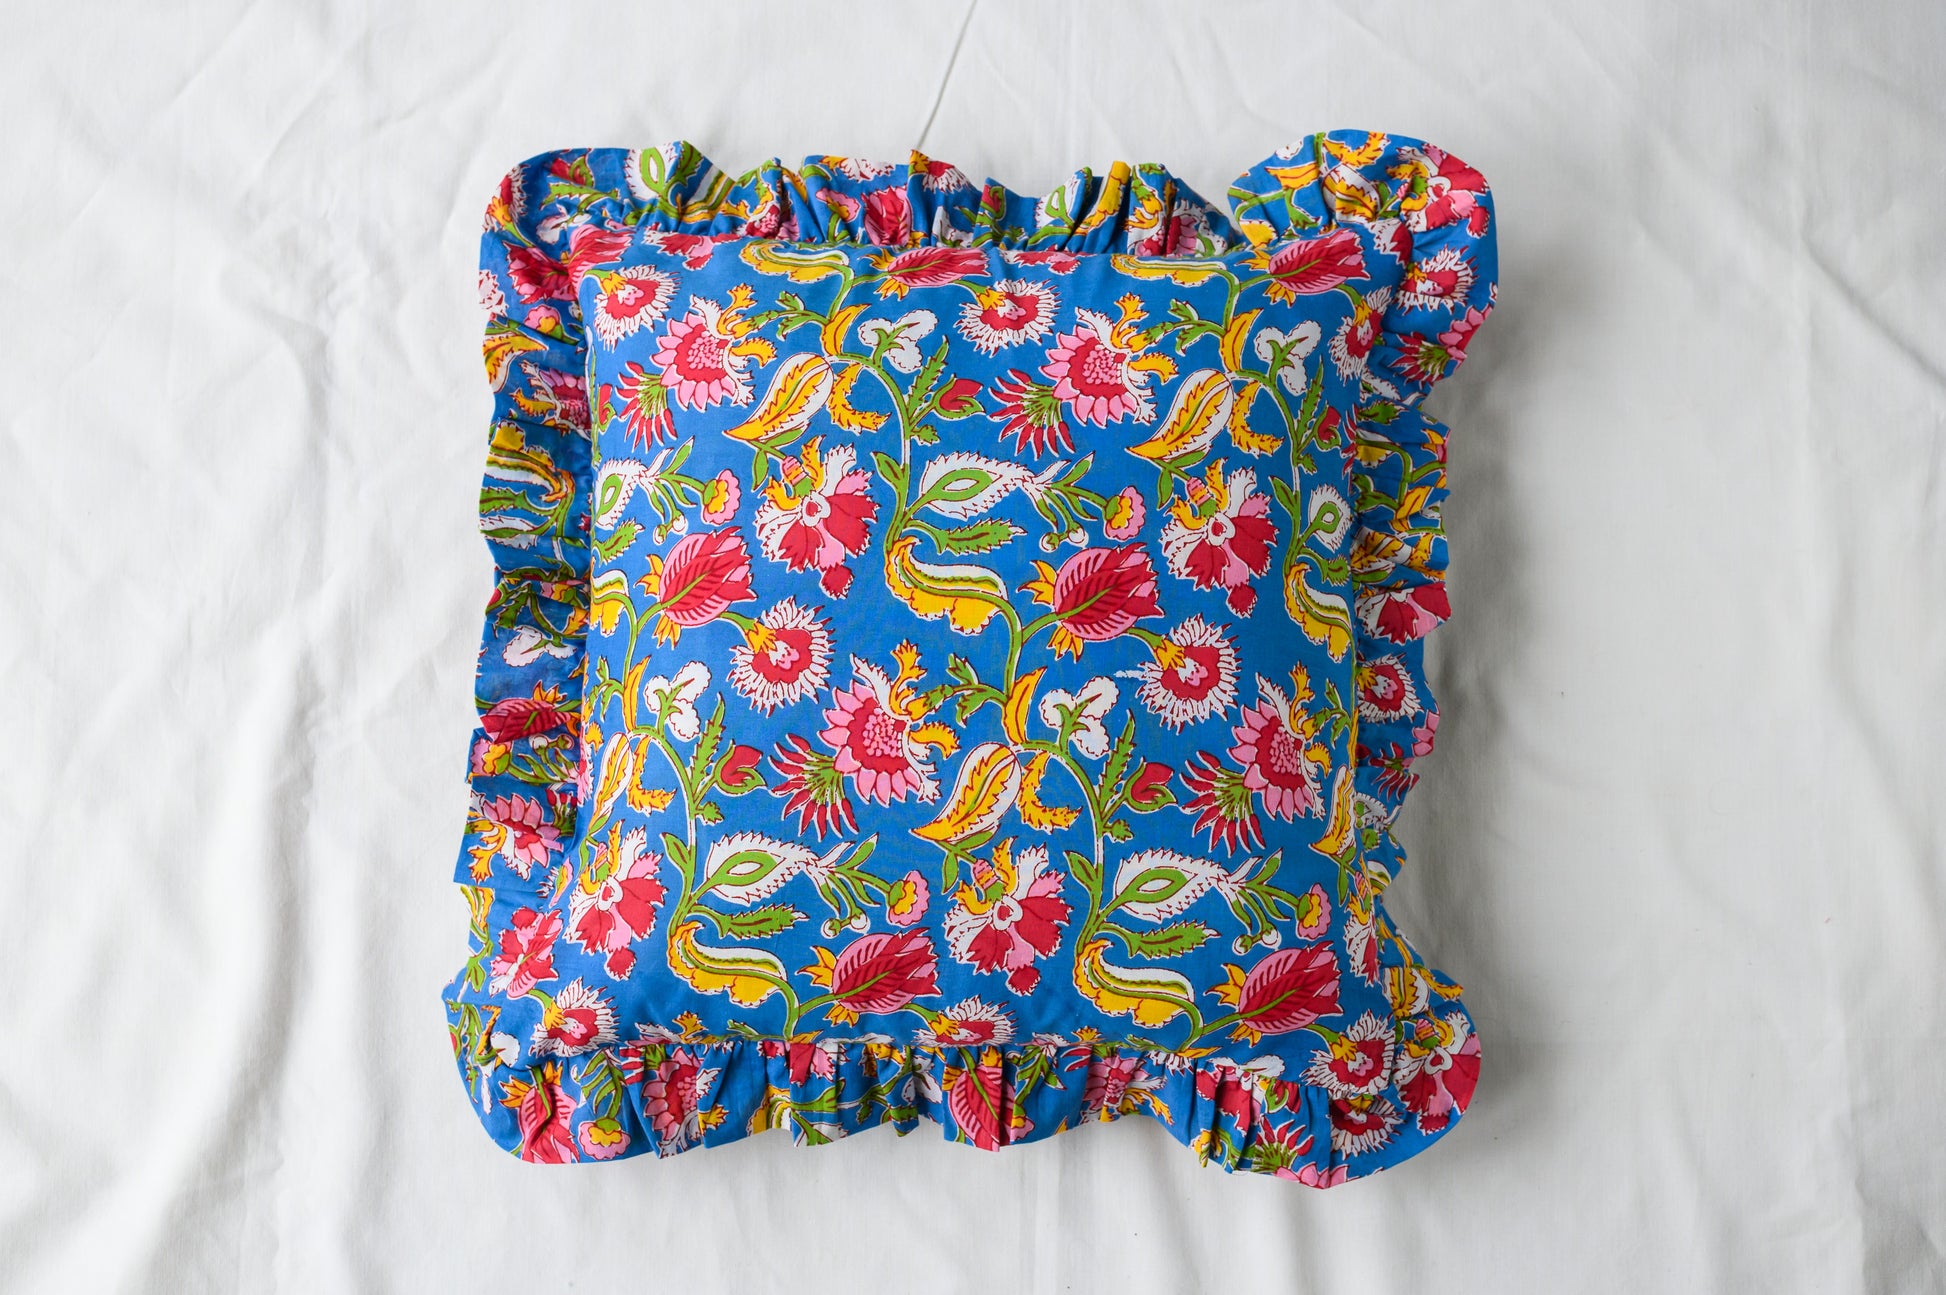 block print cushions uk